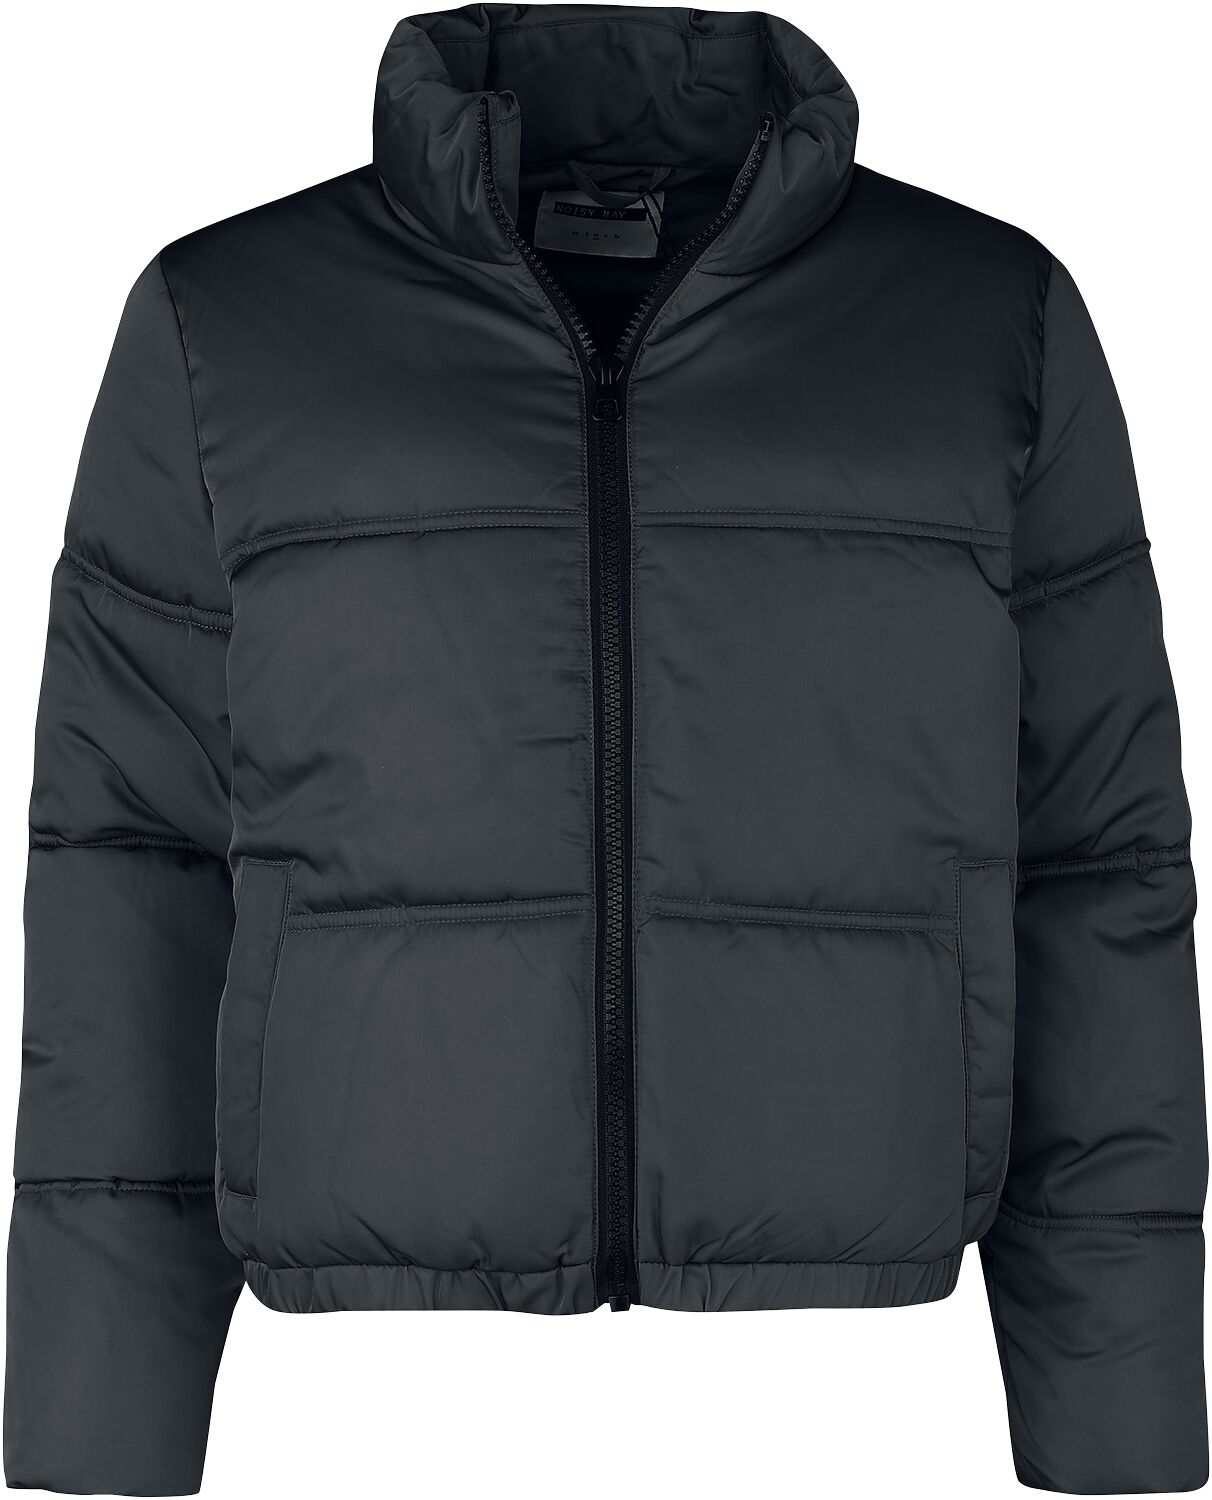 Veste d'hiver de Noisy May - NMAnni Jacket - M - pour Femme - noir